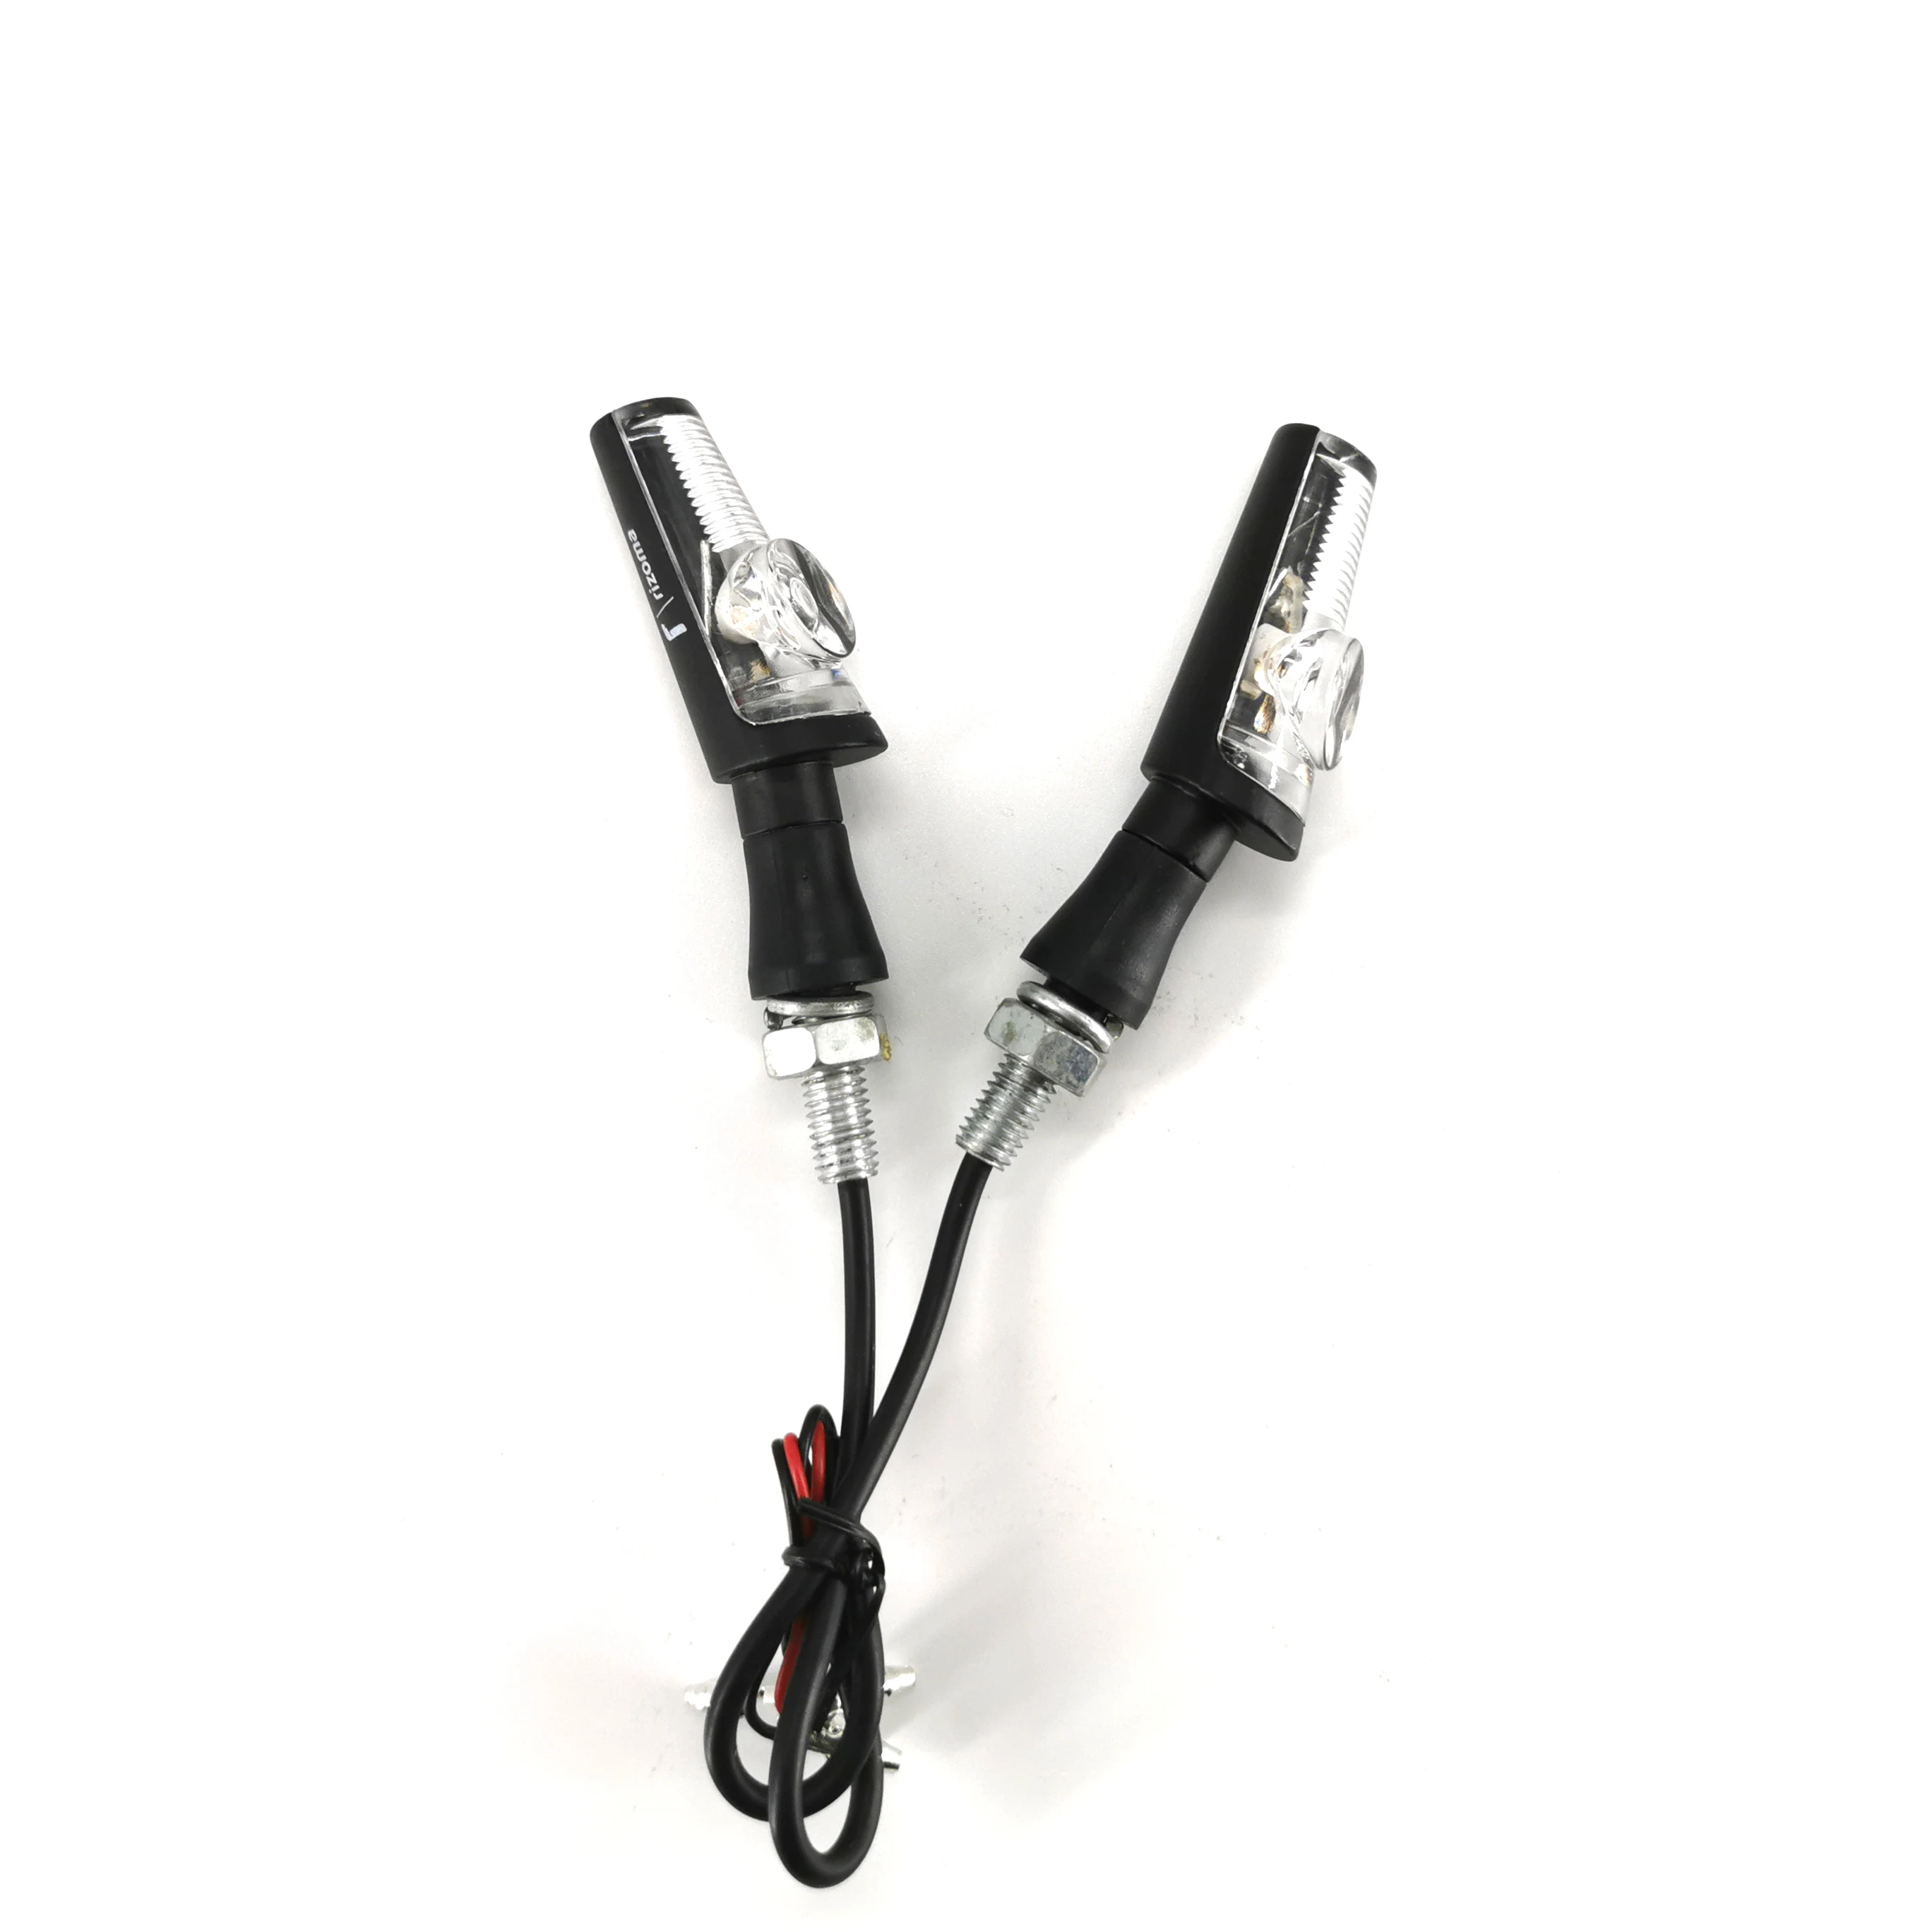 2 шт., Универсальный светильник для мотоцикла Rizoma, указатель поворота, для чоппера, кафе, янтарный светодиодный светильник, алюминиевый сплав, черный с коробкой - Цвет: A